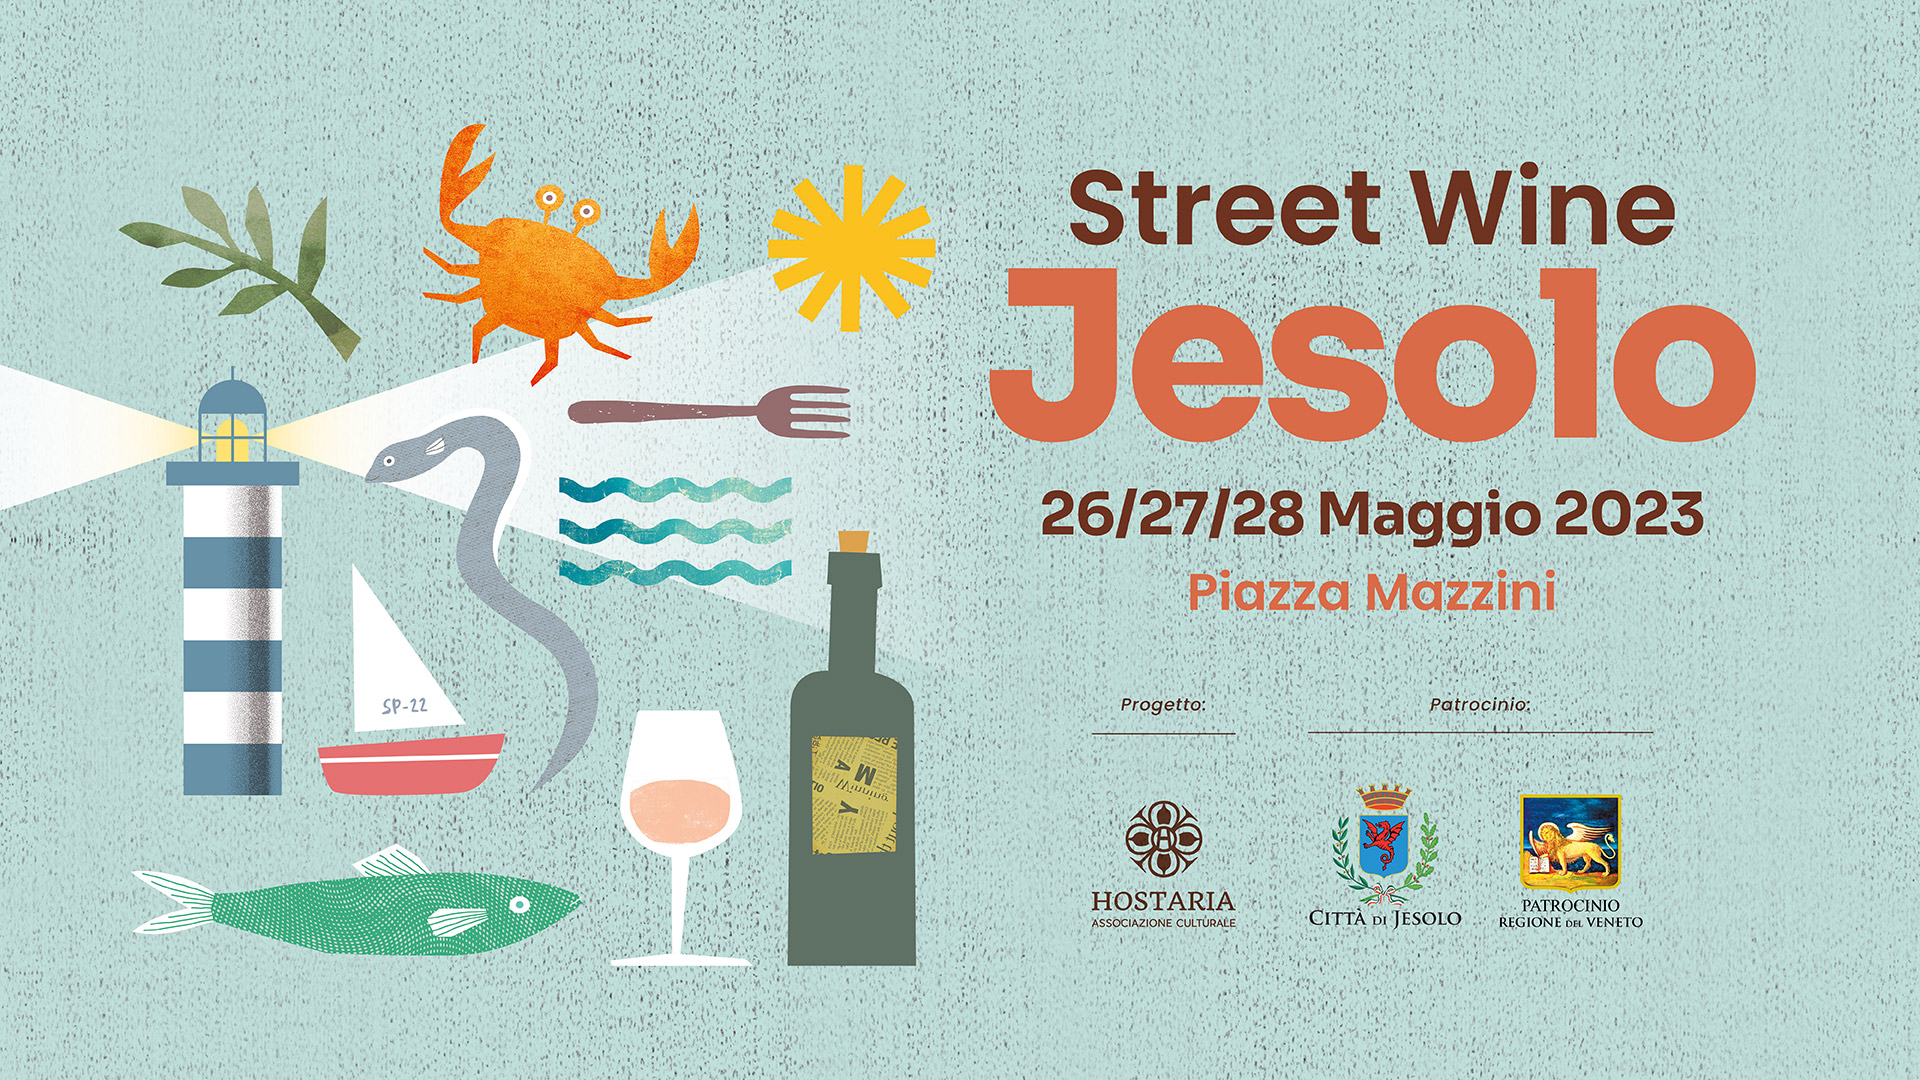 Street Wine Jesolo 2023 • 2^ edizione - EventiFVG.it